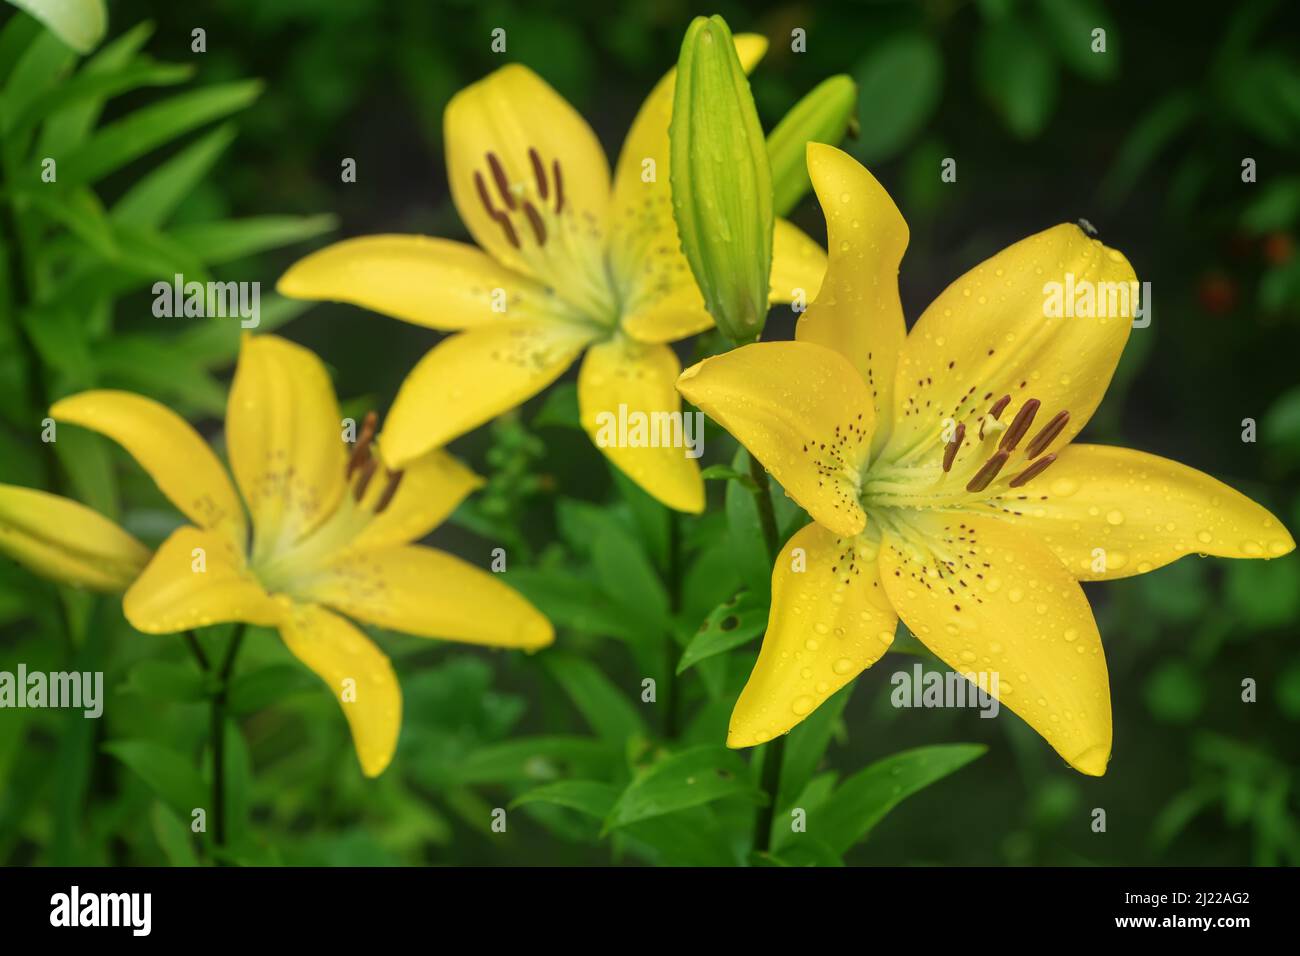 Lilie des gelben Planeten (Lilium) - die Sorte ist ein röhrenförmiger Hybride aus Lilien, einer Pflanzengattung der Familie der Liliengewächse. Mehrjährige Kräuter, mit Zwiebeln c ausgestattet Stockfoto